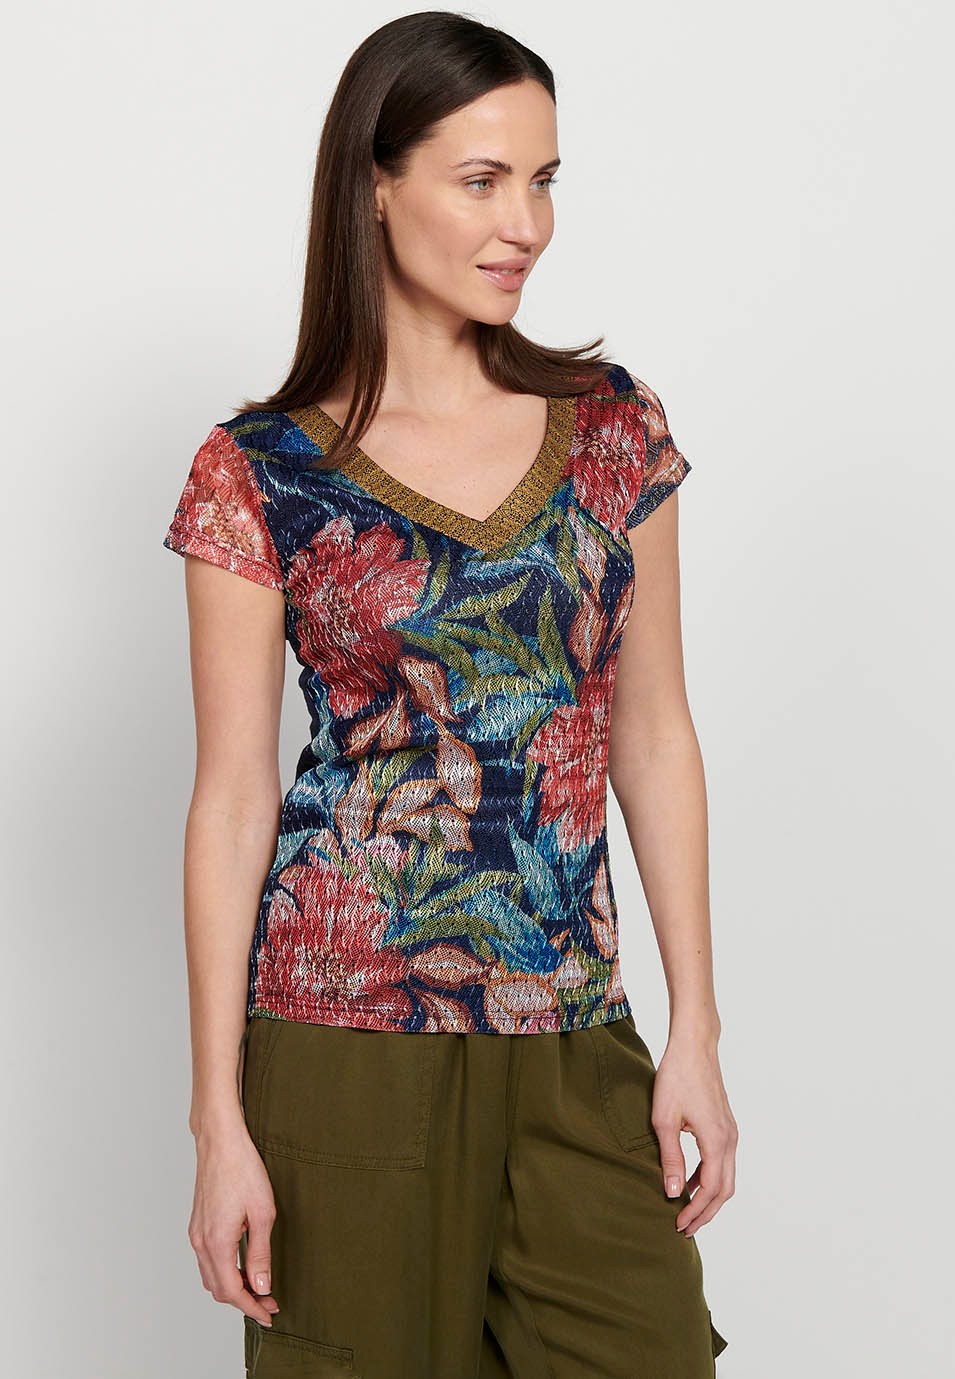 Samarreta de màniga curta, coll bec i estampat floral multicolor per a dona